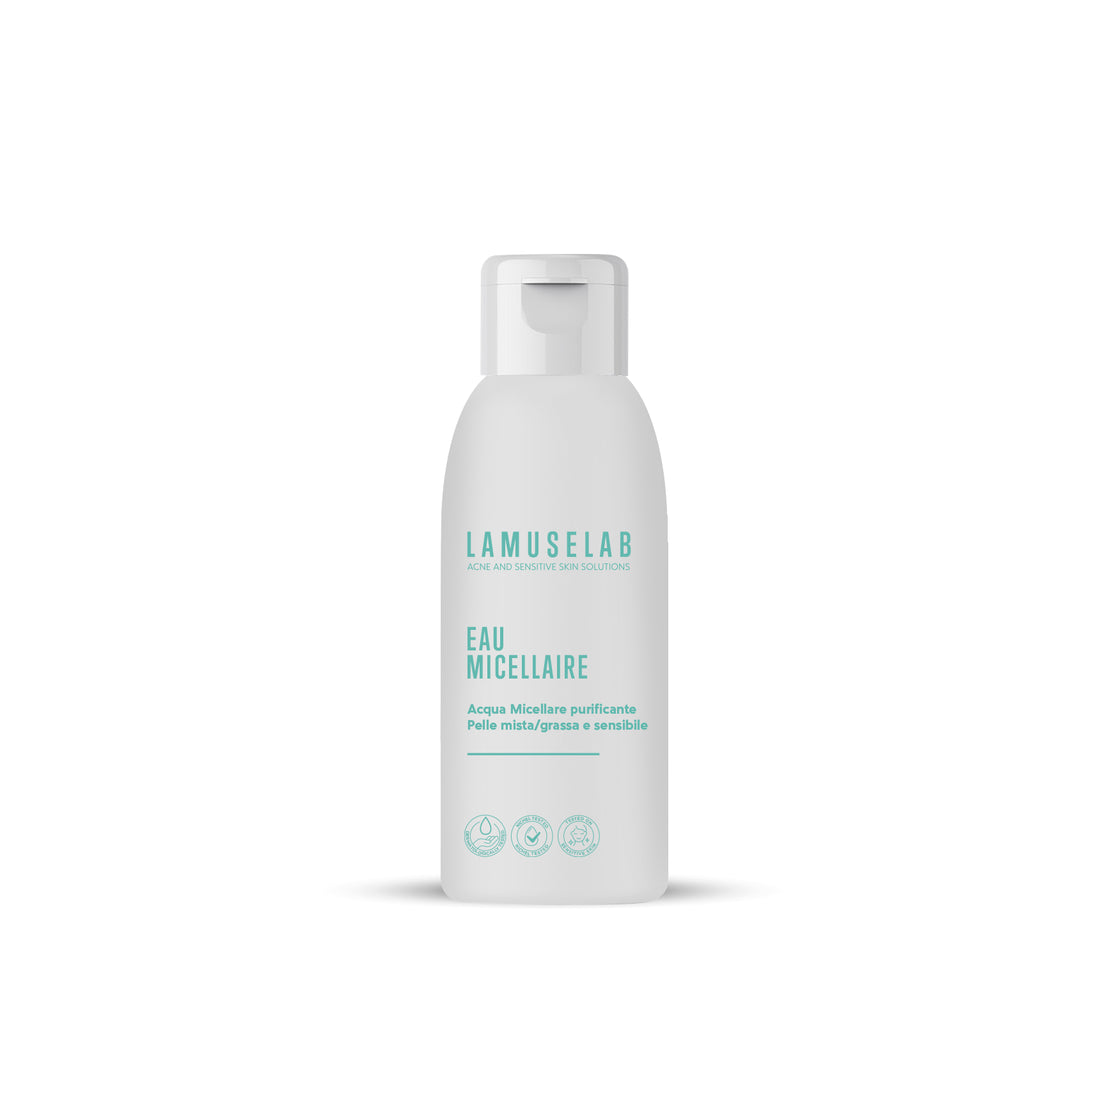 EAU MICELLAIRE acqua micellare - LaMuseLab 100 ml